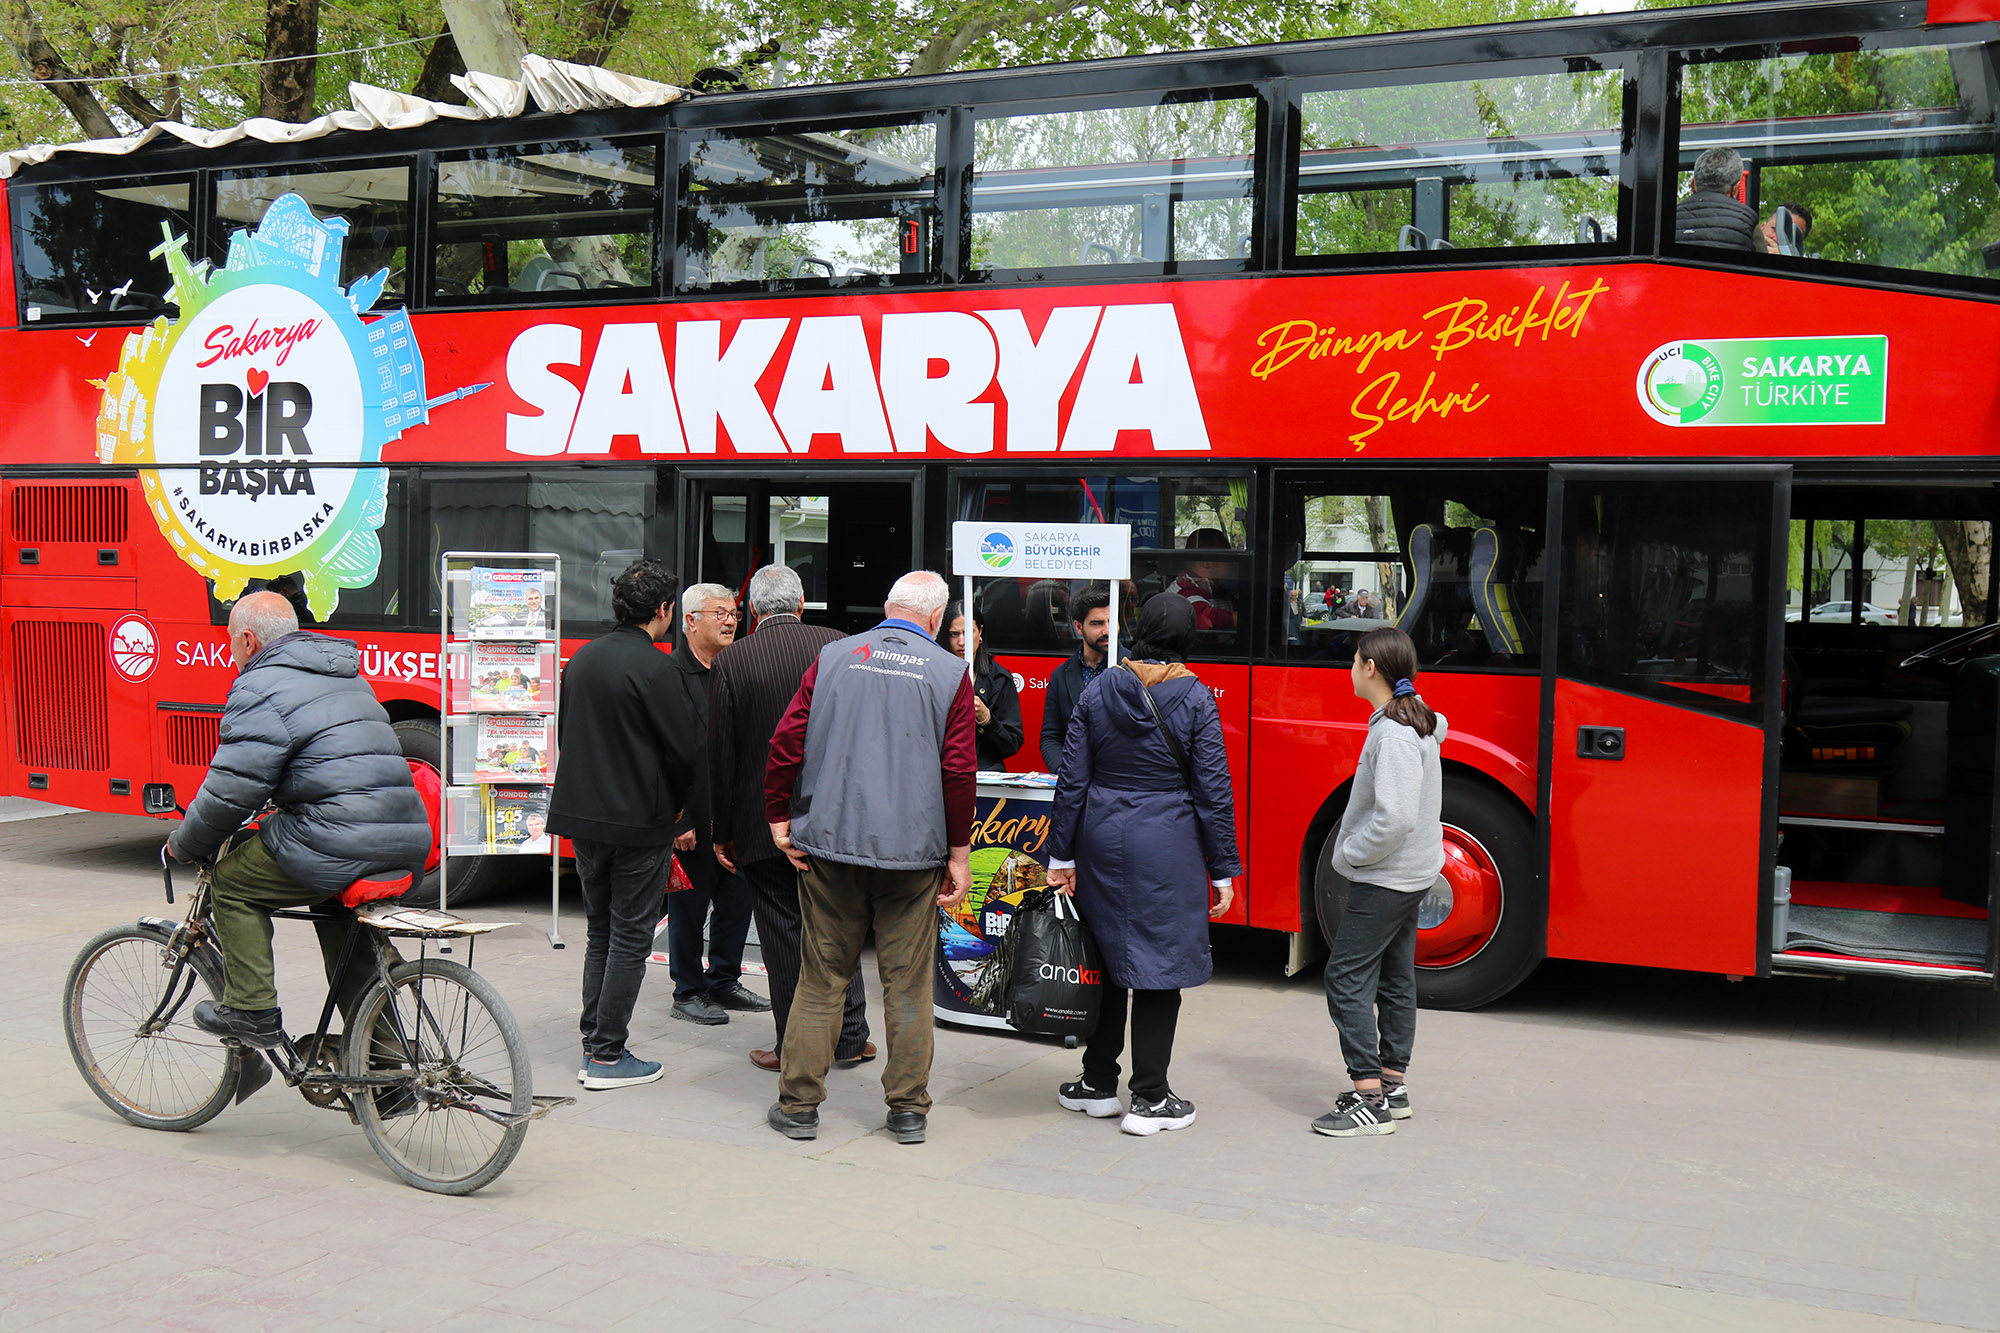 Büyükşehir’in üstü açık otobüsü bayram sonrası yola çıkıyor